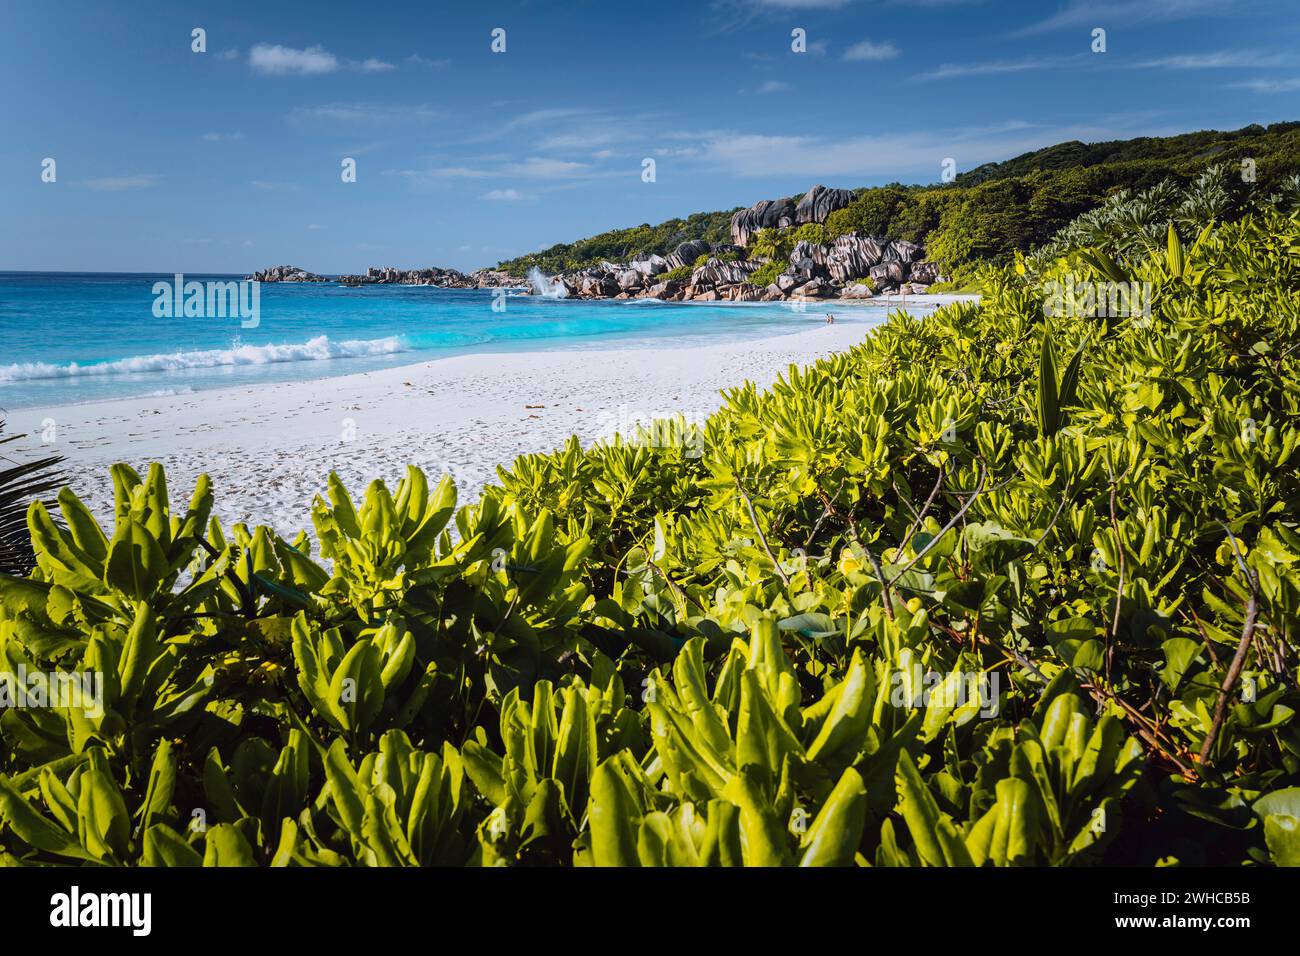 Spiaggia di Grand Anse sull'isola la Digue alle Seychelles. Spiaggia di sabbia bianca con laguna blu sull'oceano. Foglie verdi defocalizzate in primo piano. Foto Stock